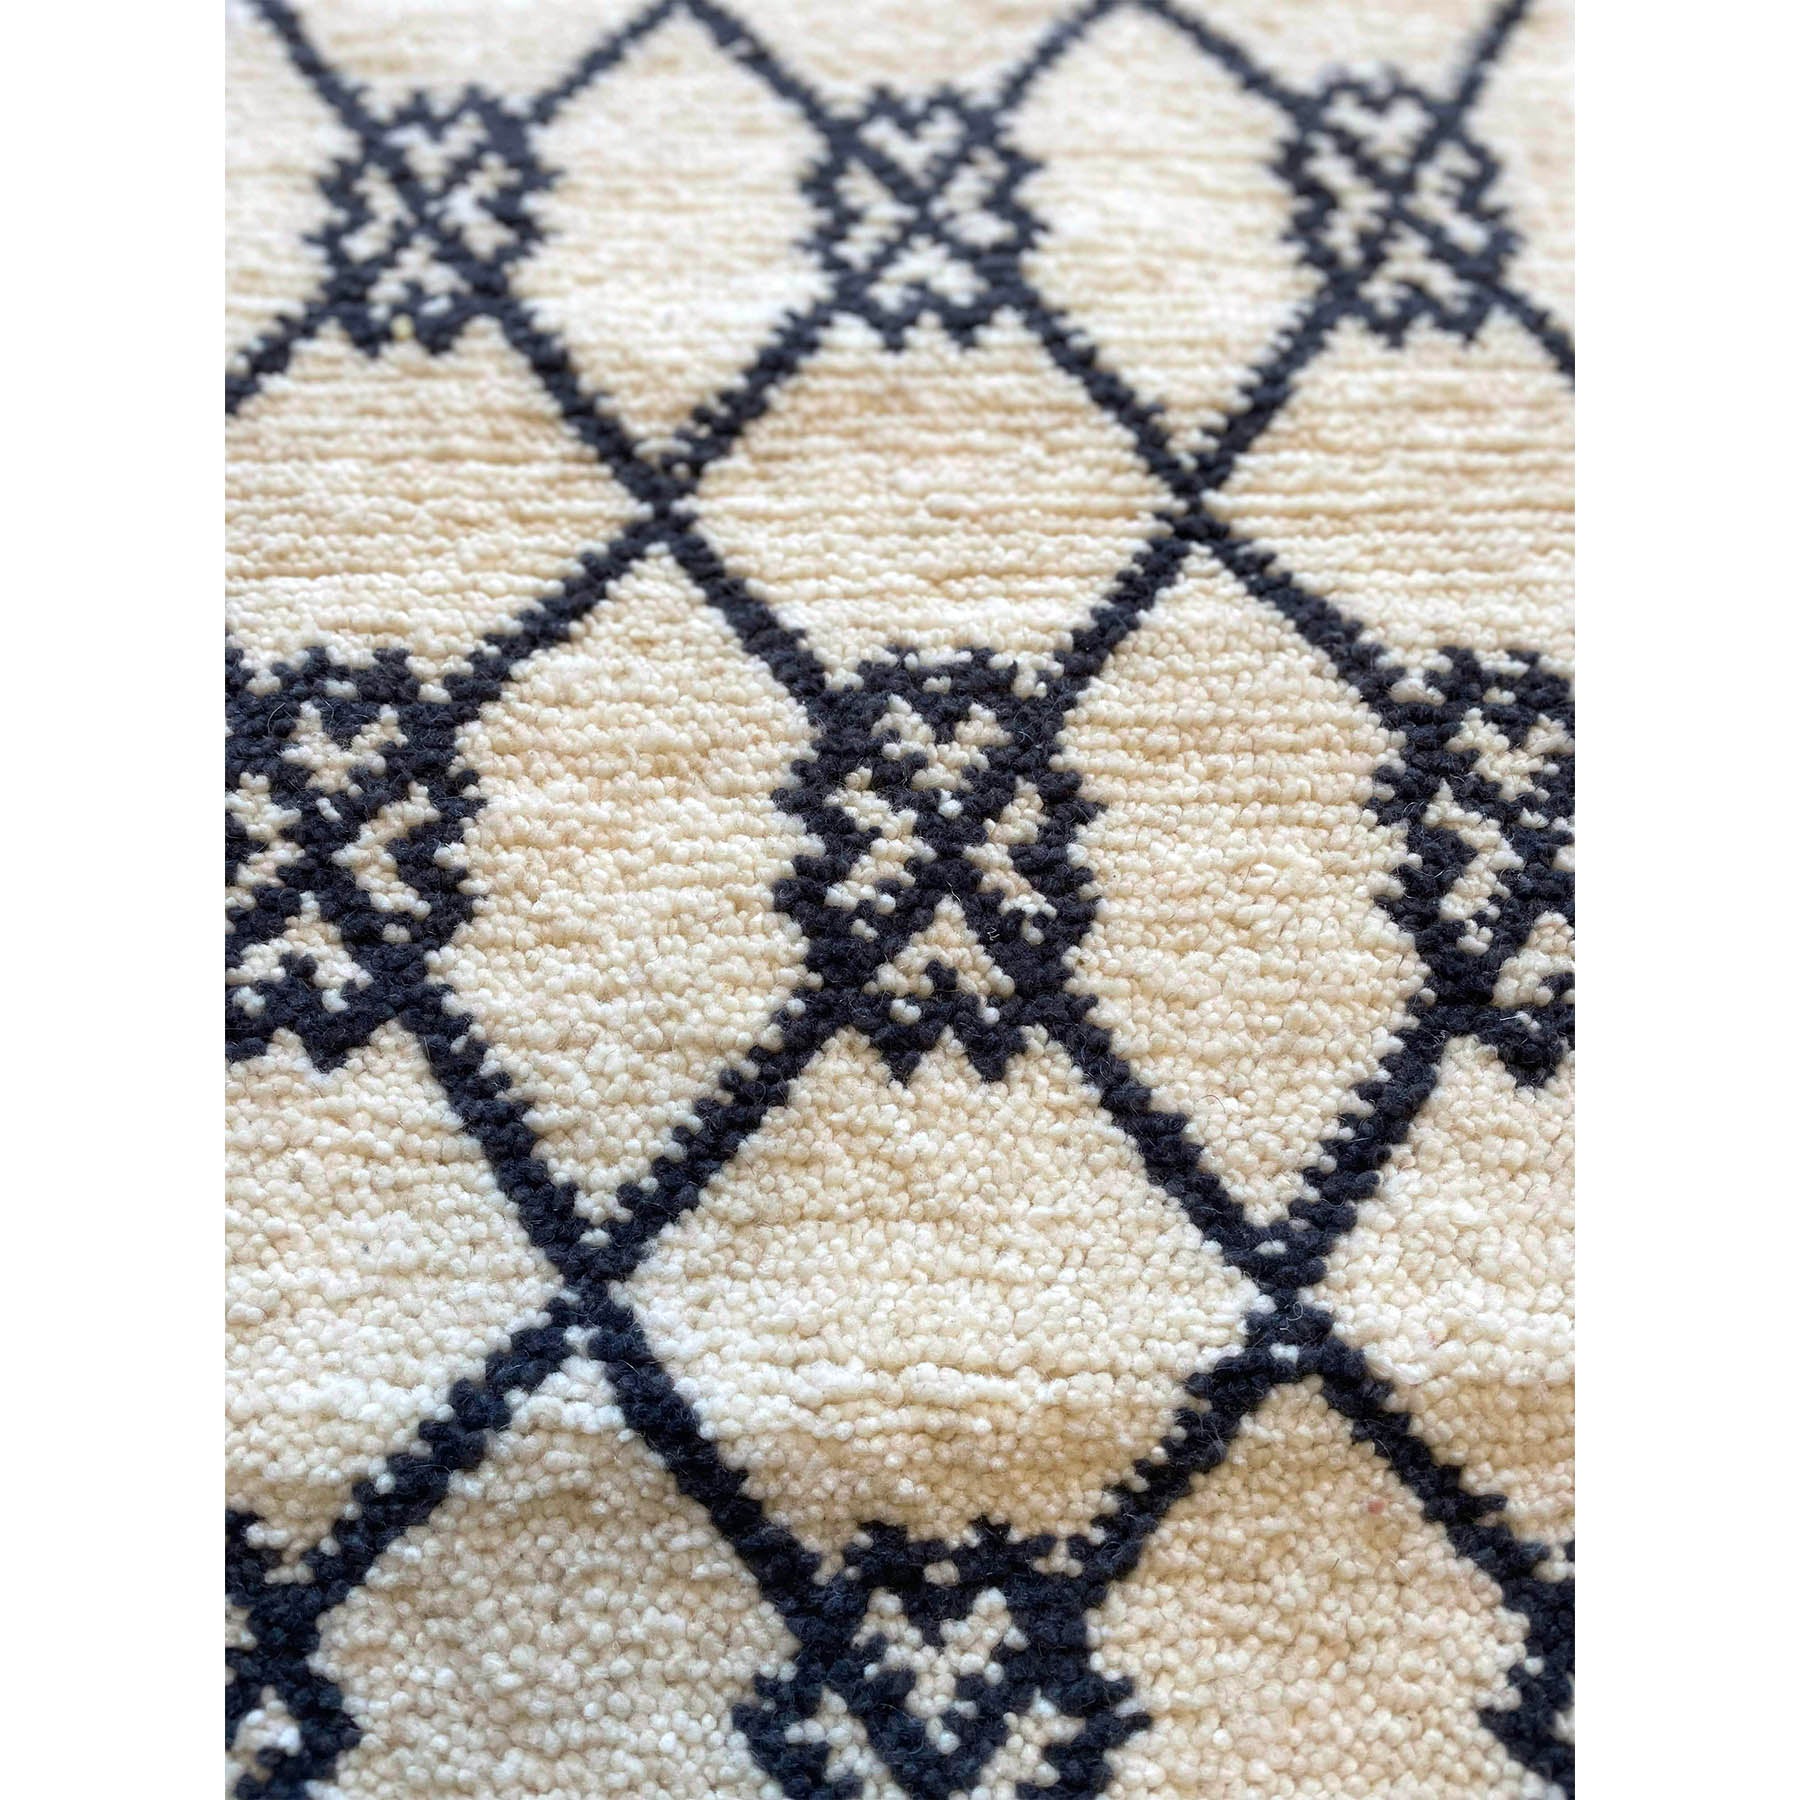 Handwoven middle atlas Moroccan trellis throw rug - Kantara | Moroccan Rugs